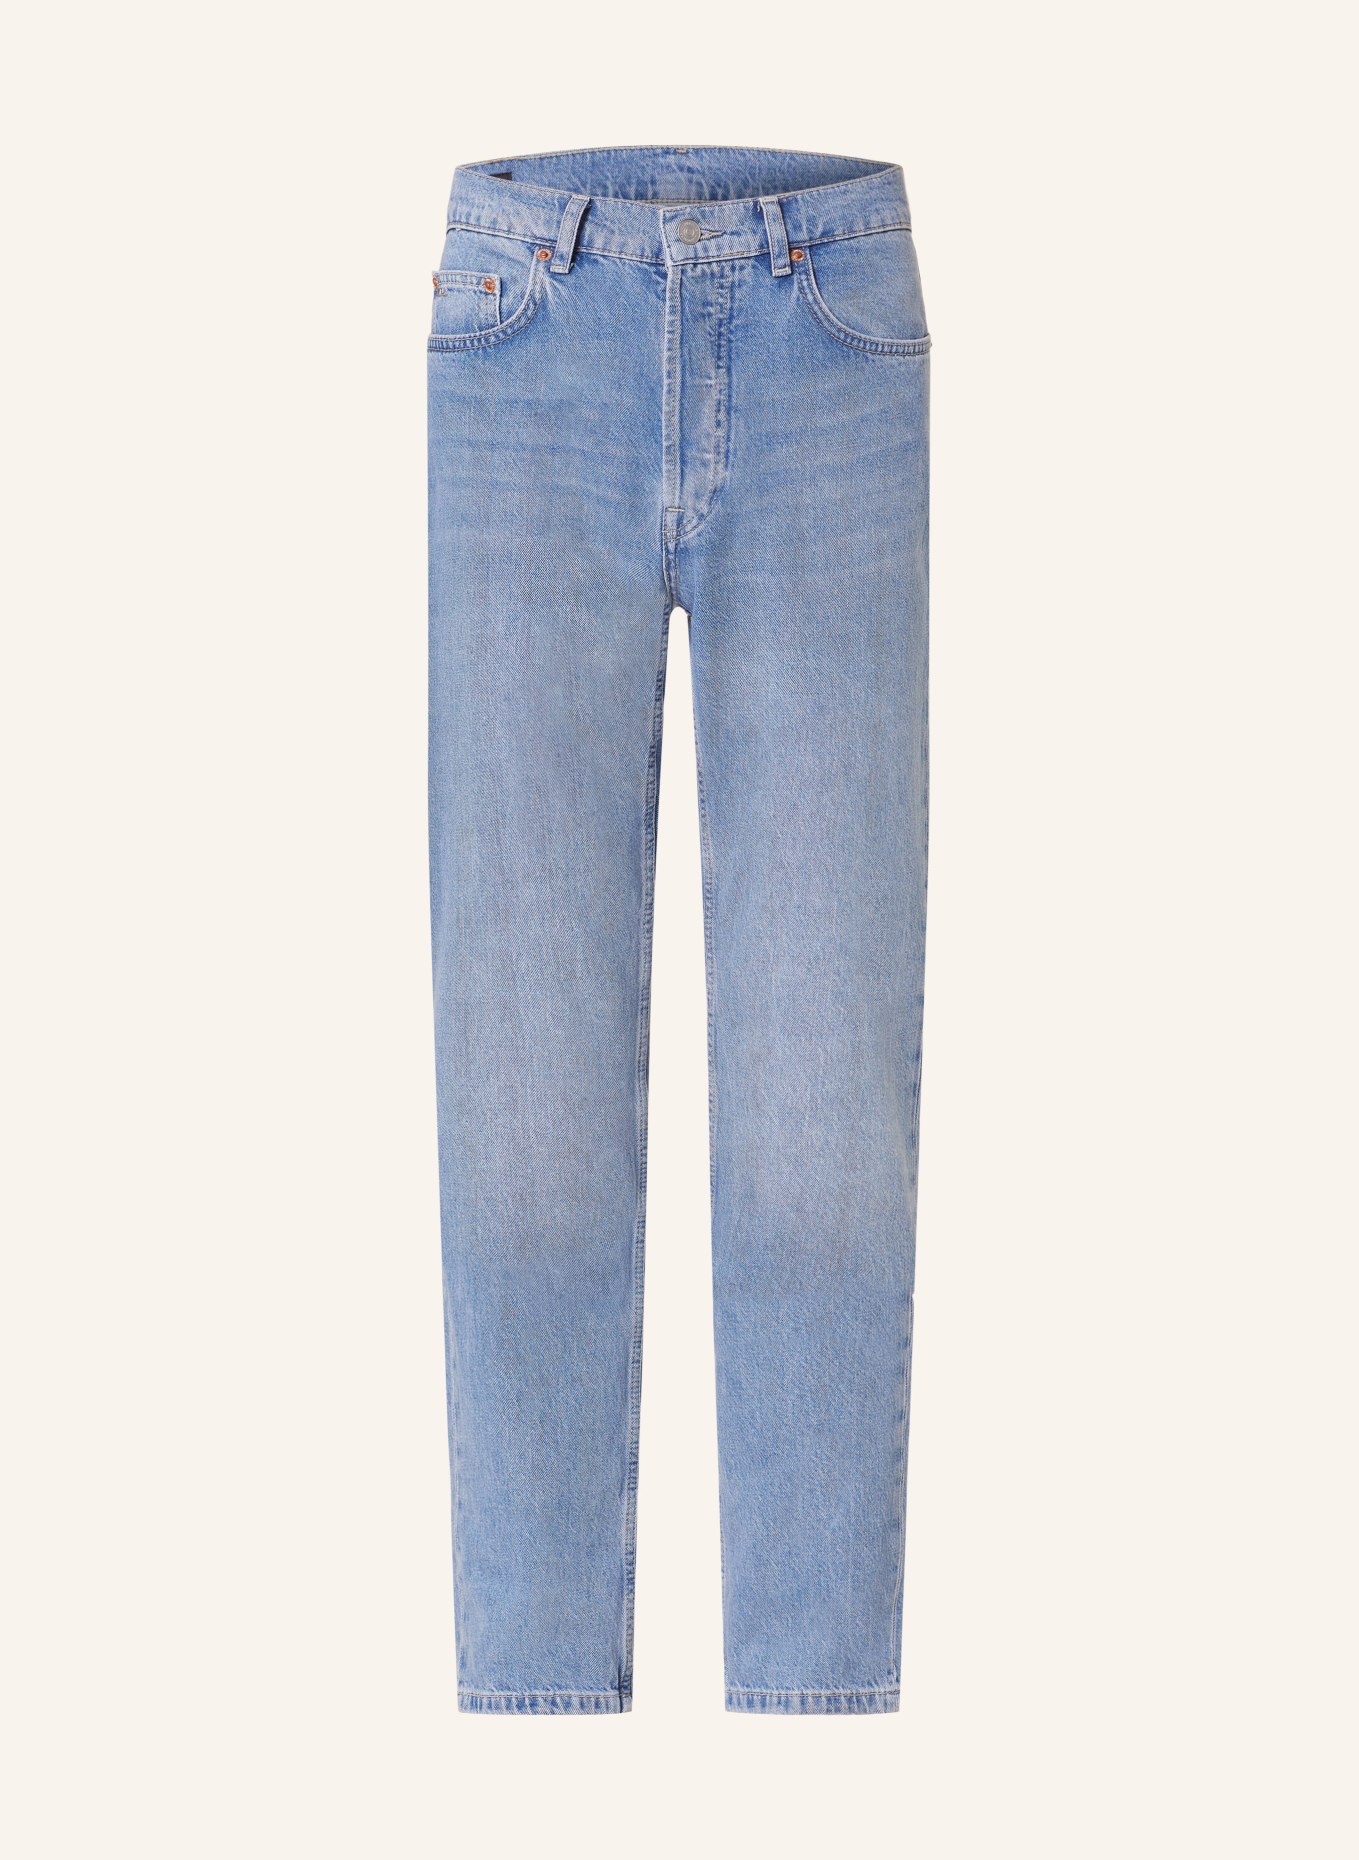 J.LINDEBERG Jeans CODY regular fit, Color: 6428 Light Blue (Image 1)